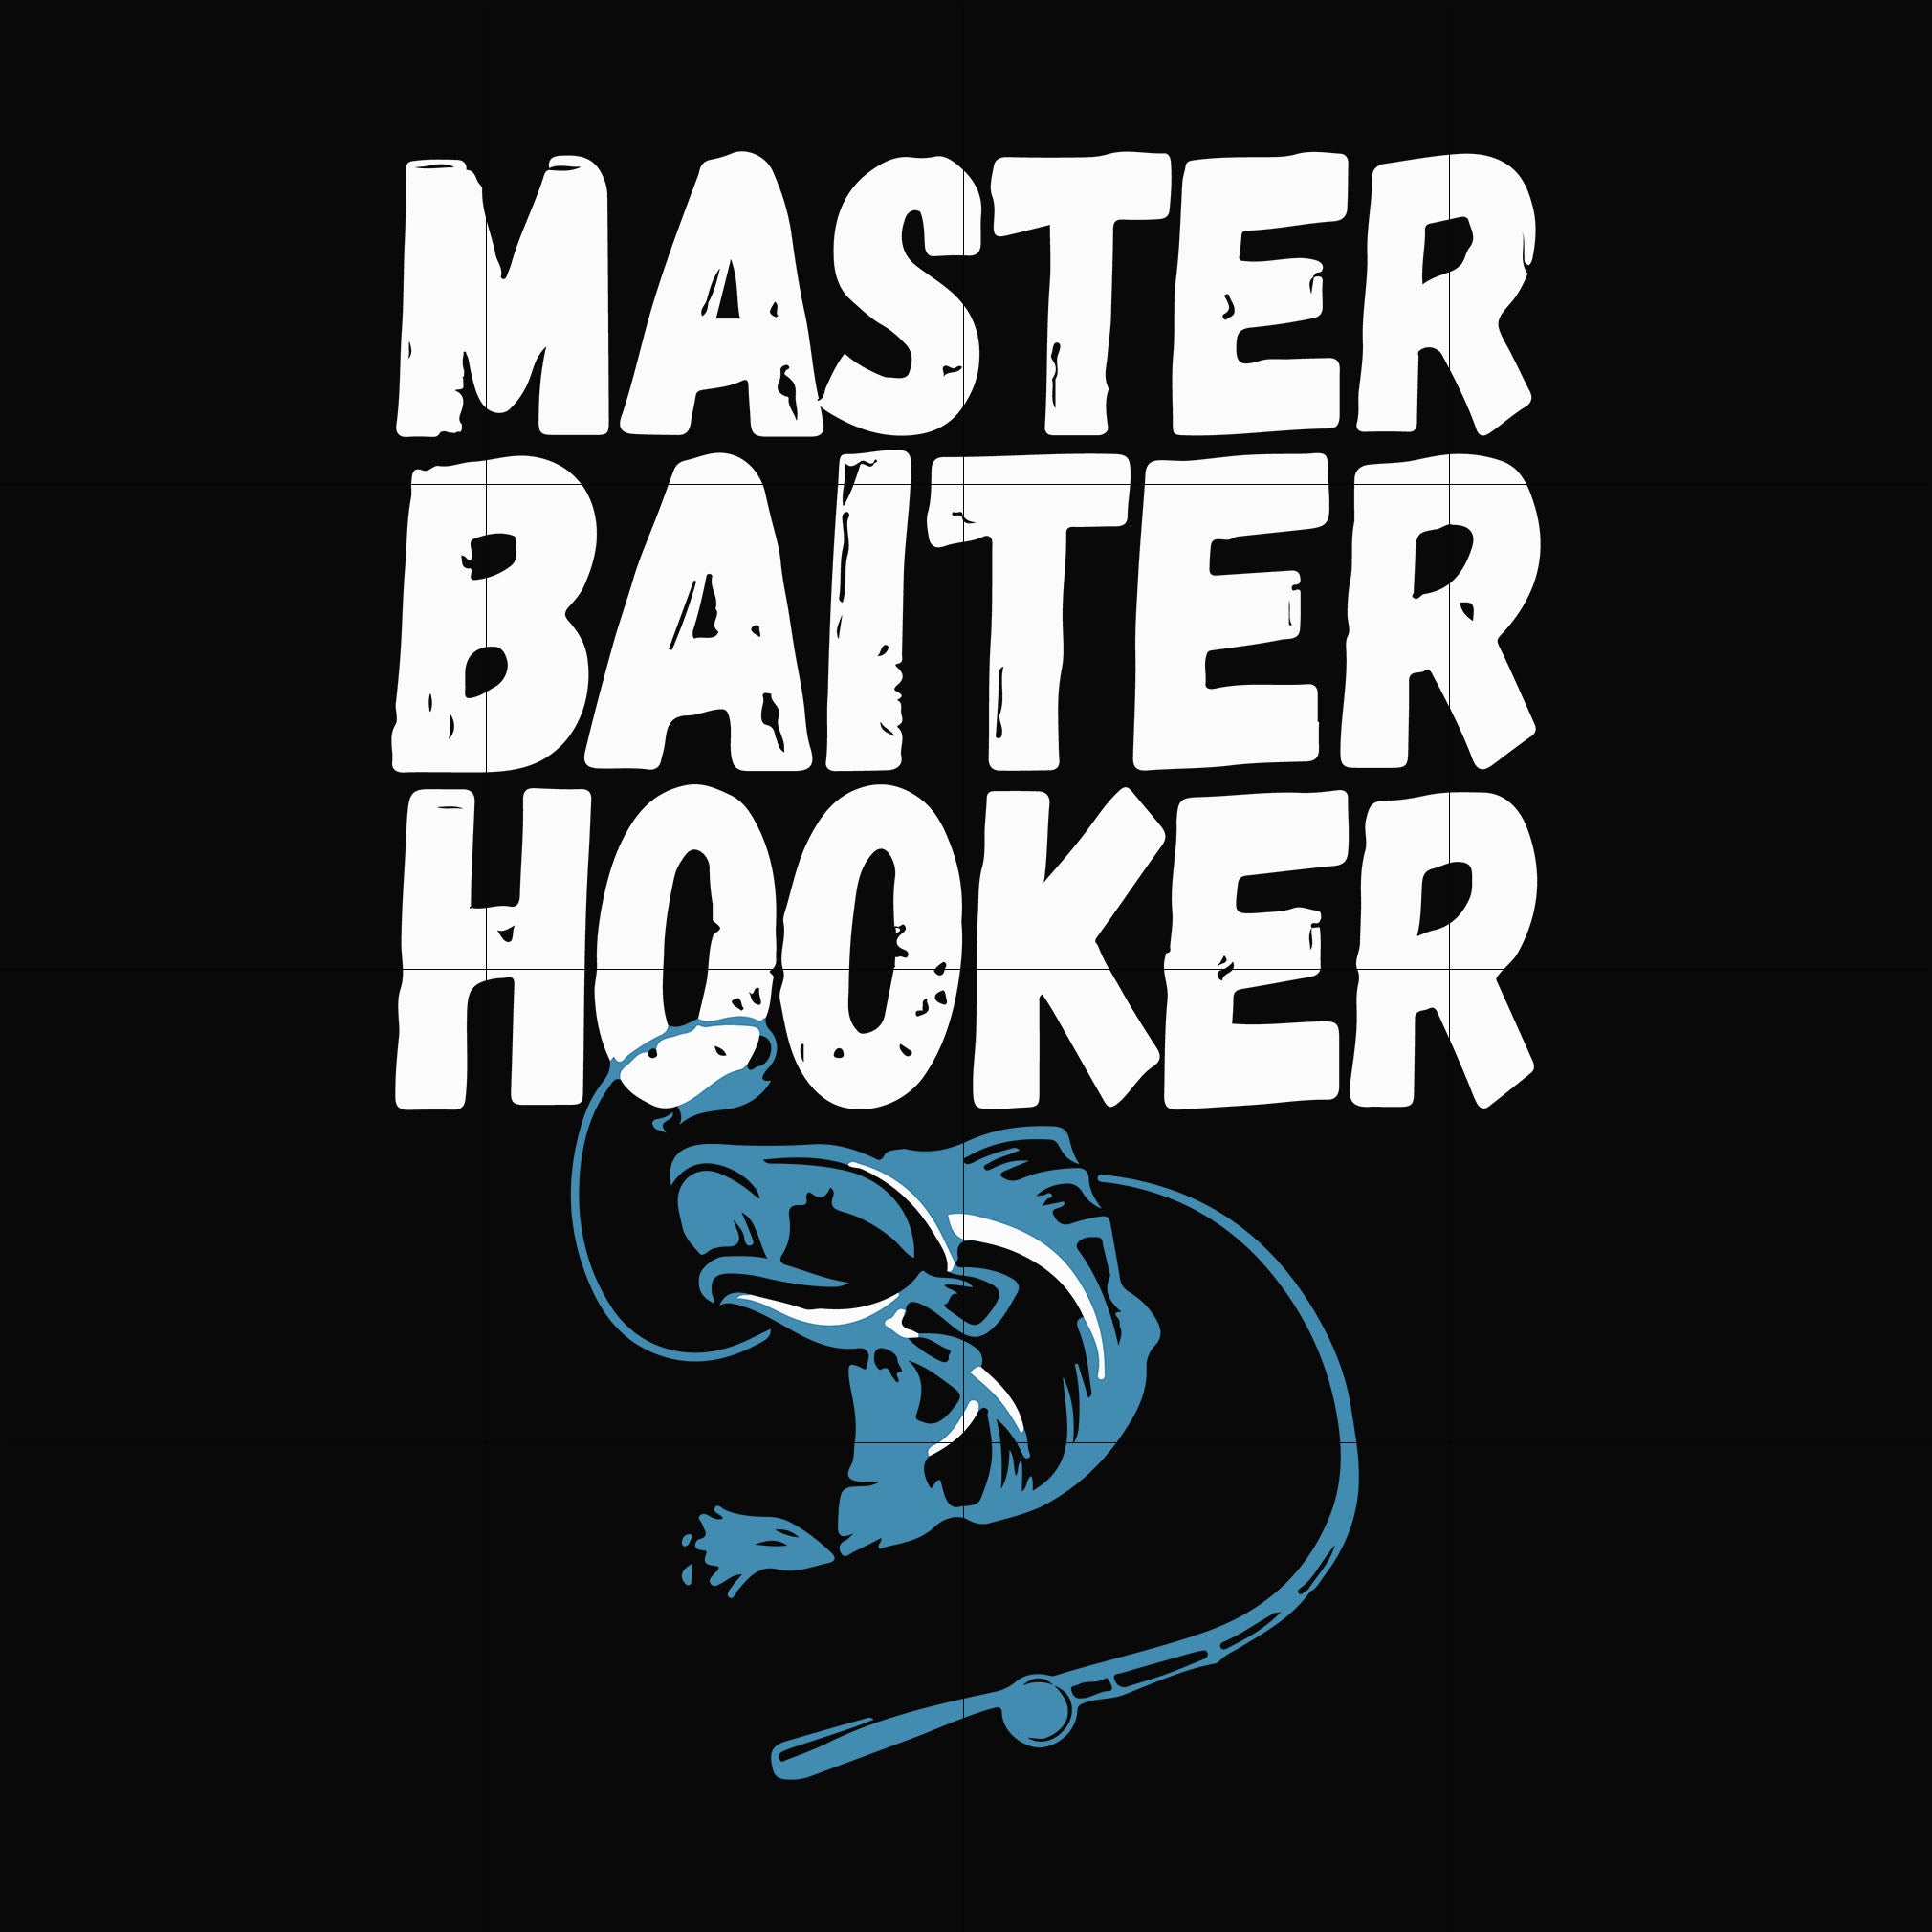 Master baiter hooker svg, png, dxf, eps digital file OTH0049